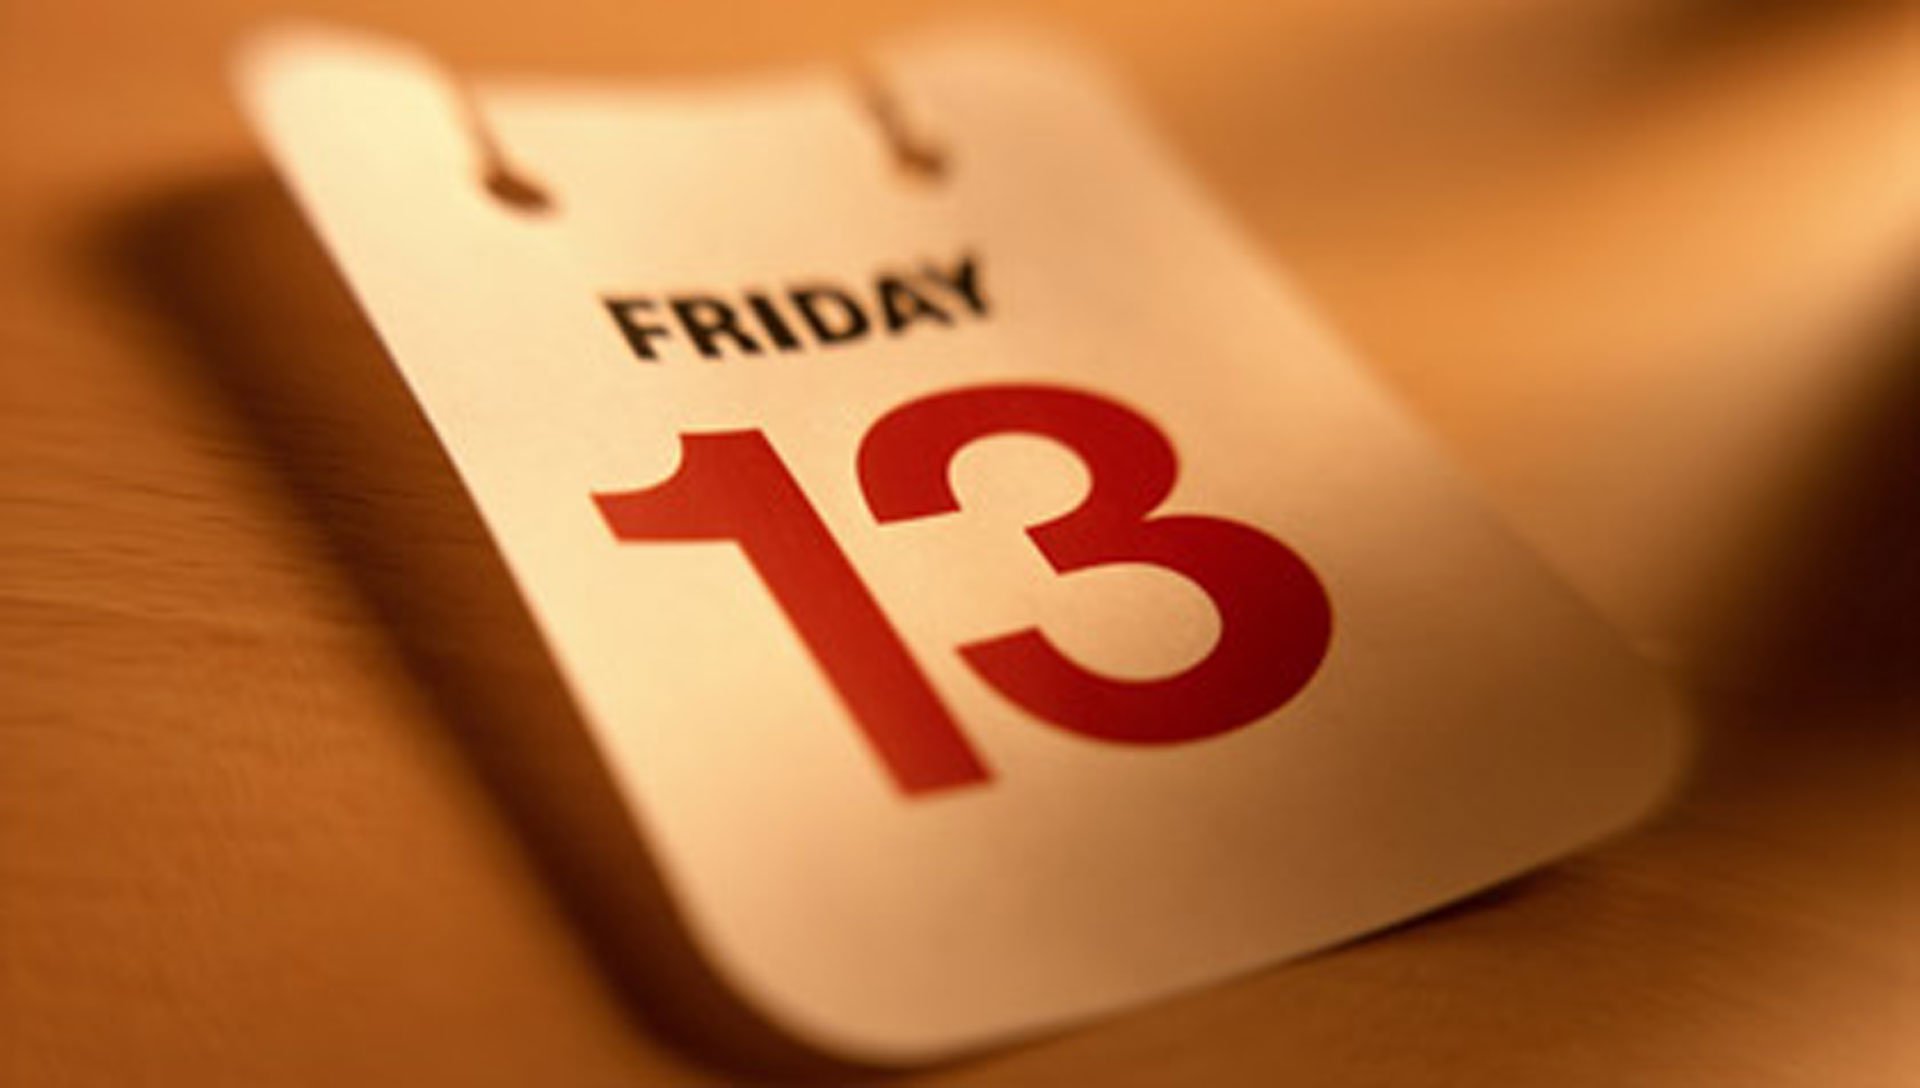 Danas je petak 13. – Zašto se ljudi boje ovog datuma?